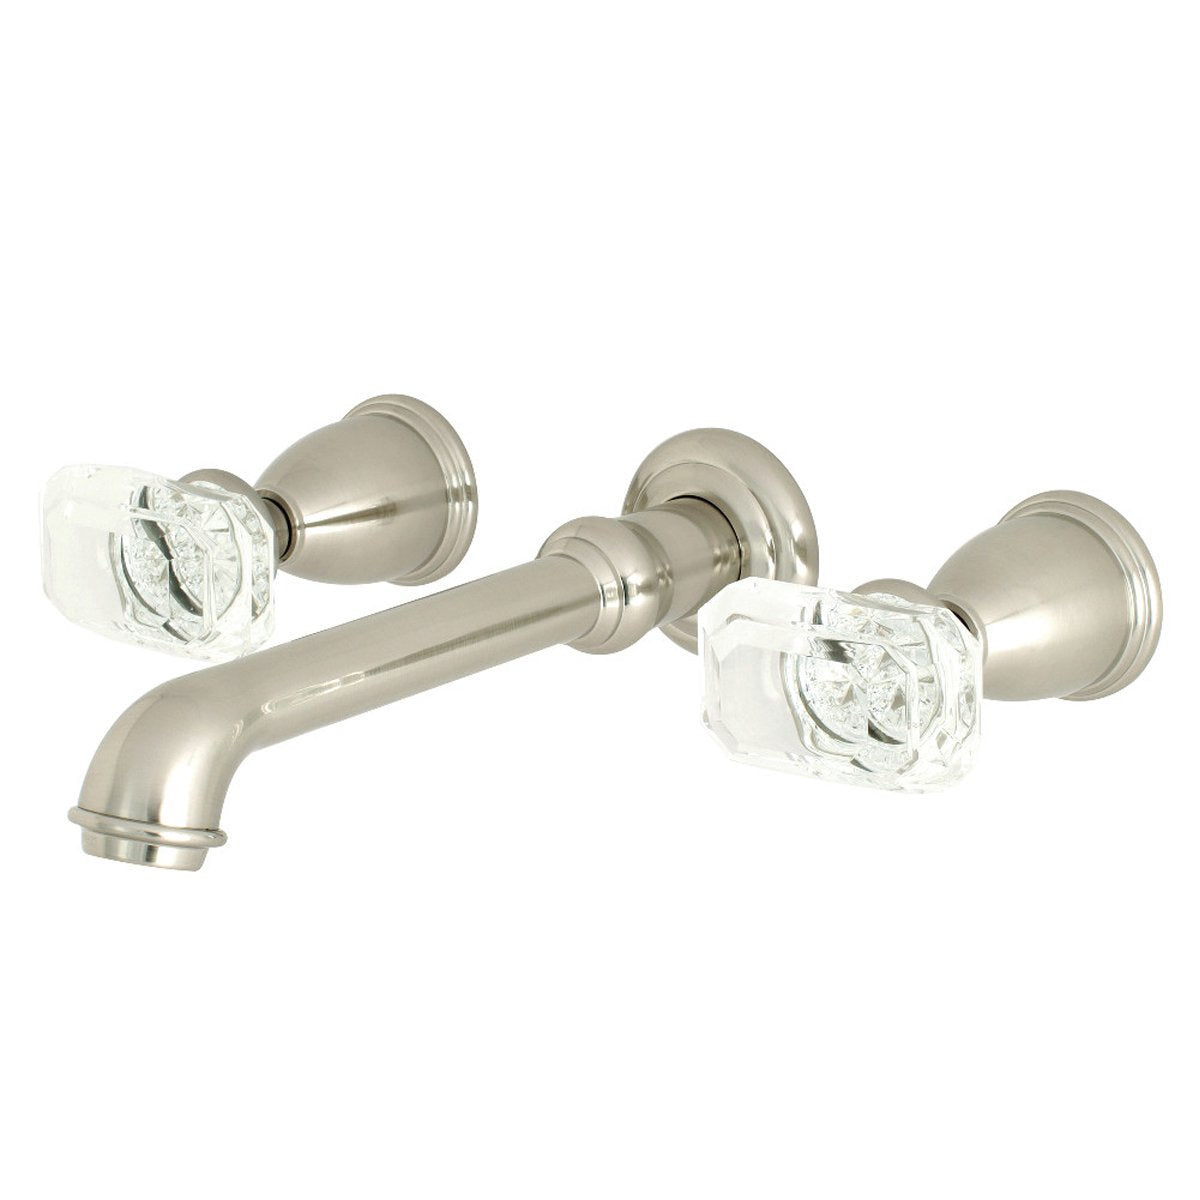 Kingston Brass Krystal Onyx Two-Handle Wall Mount Bathroom Faucet